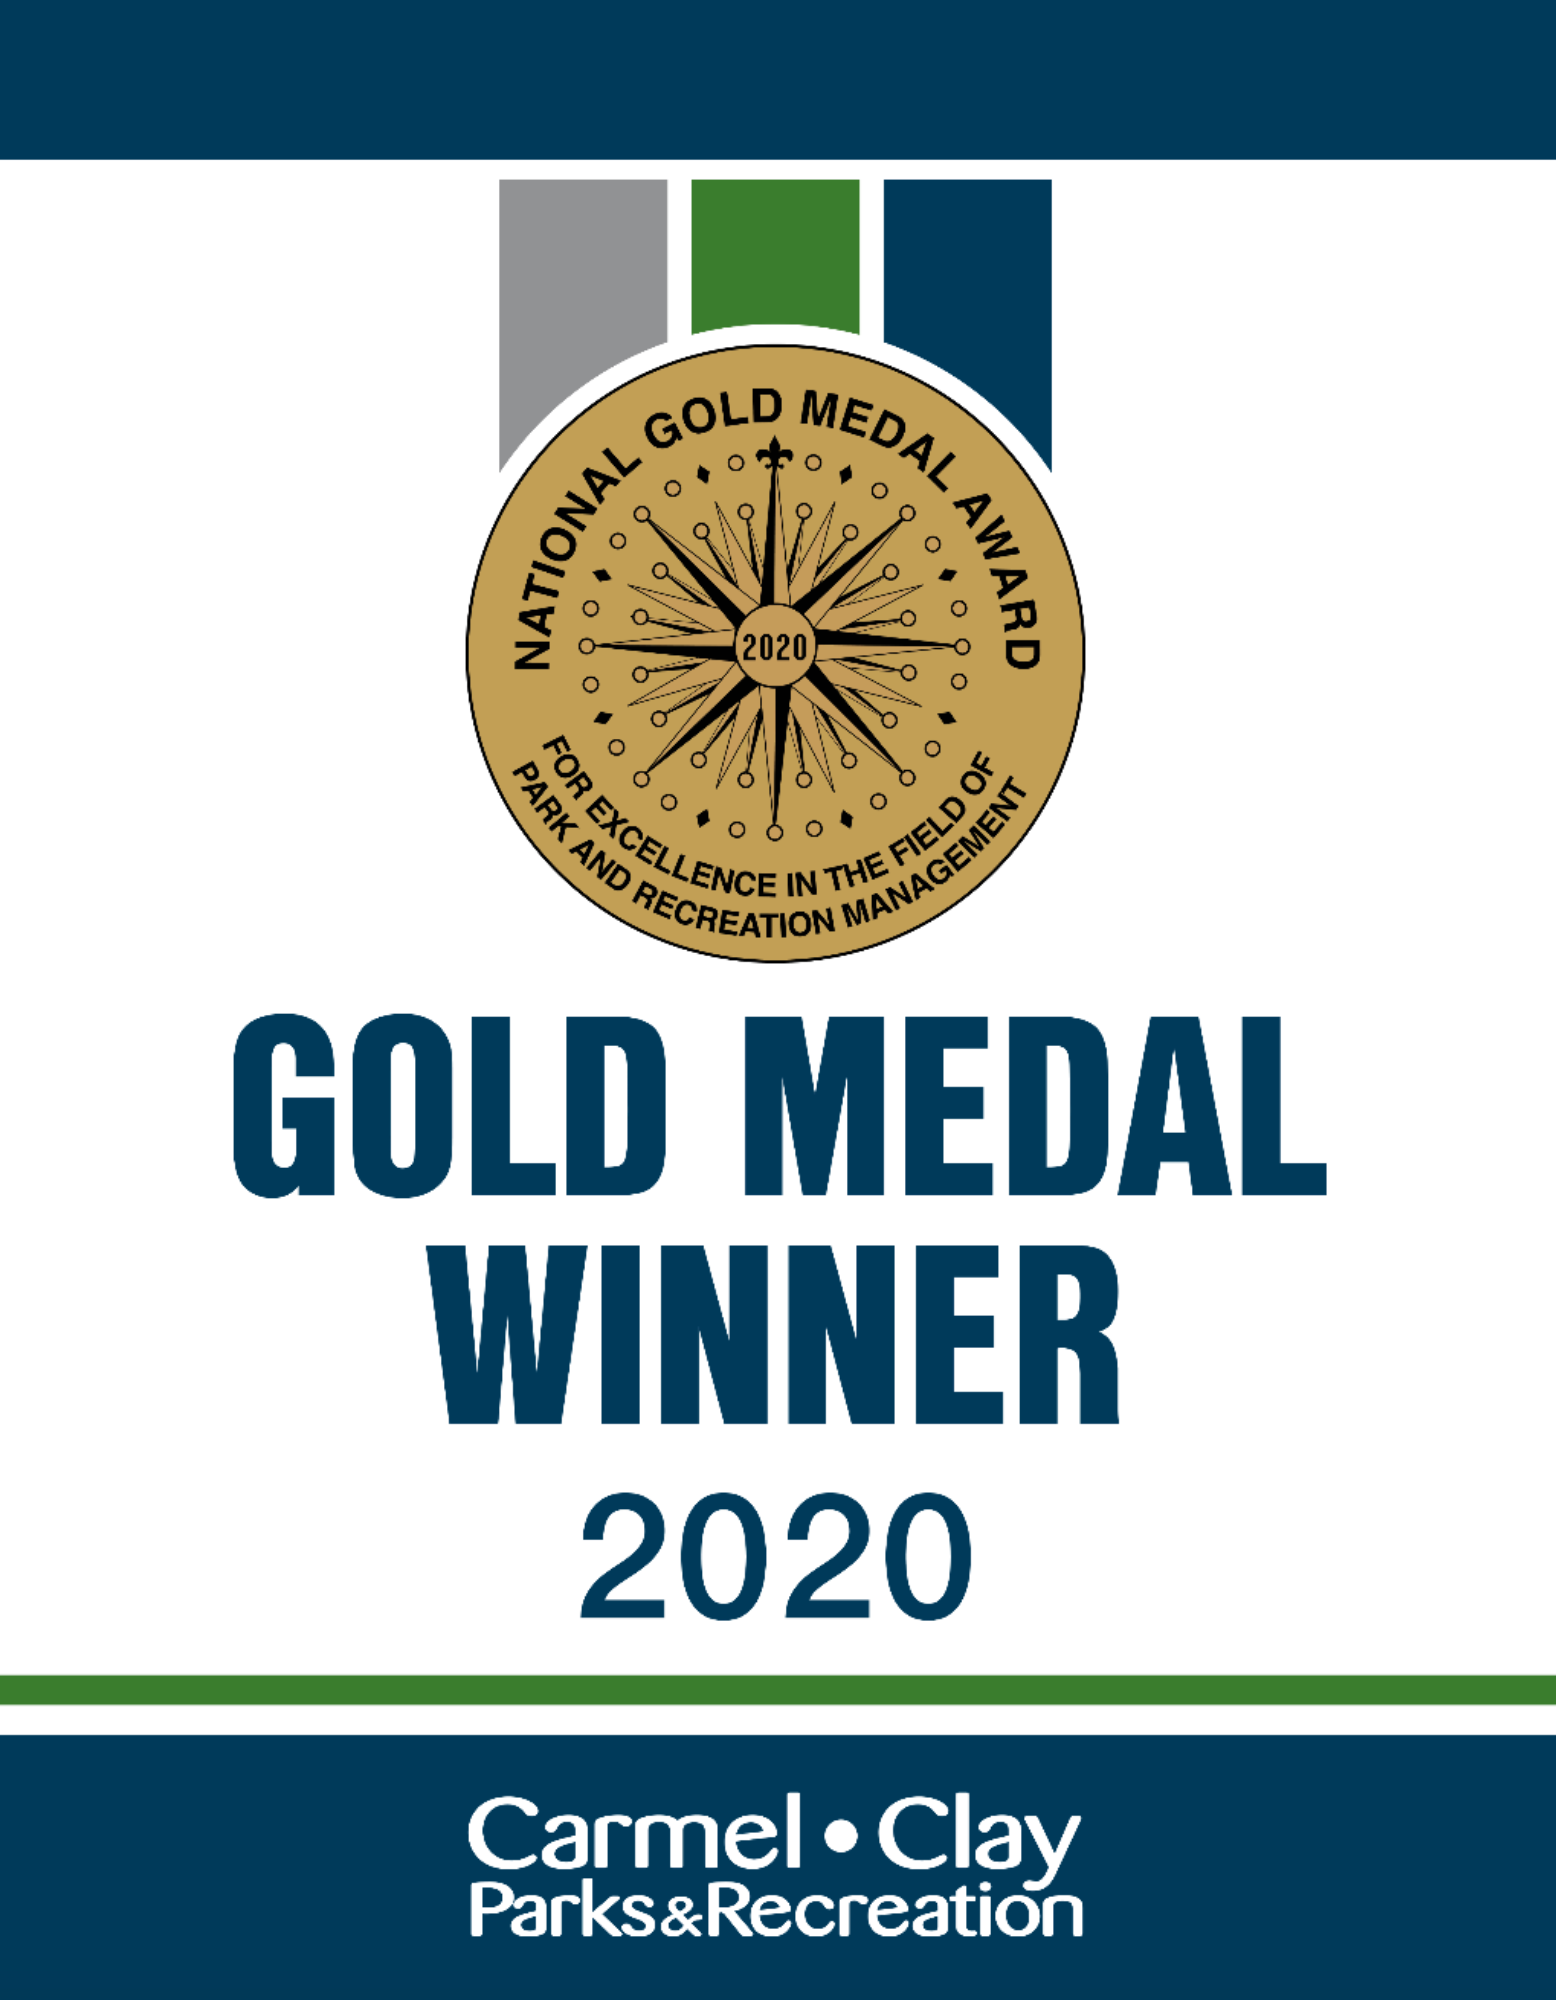 Gold Medal Winner 2020